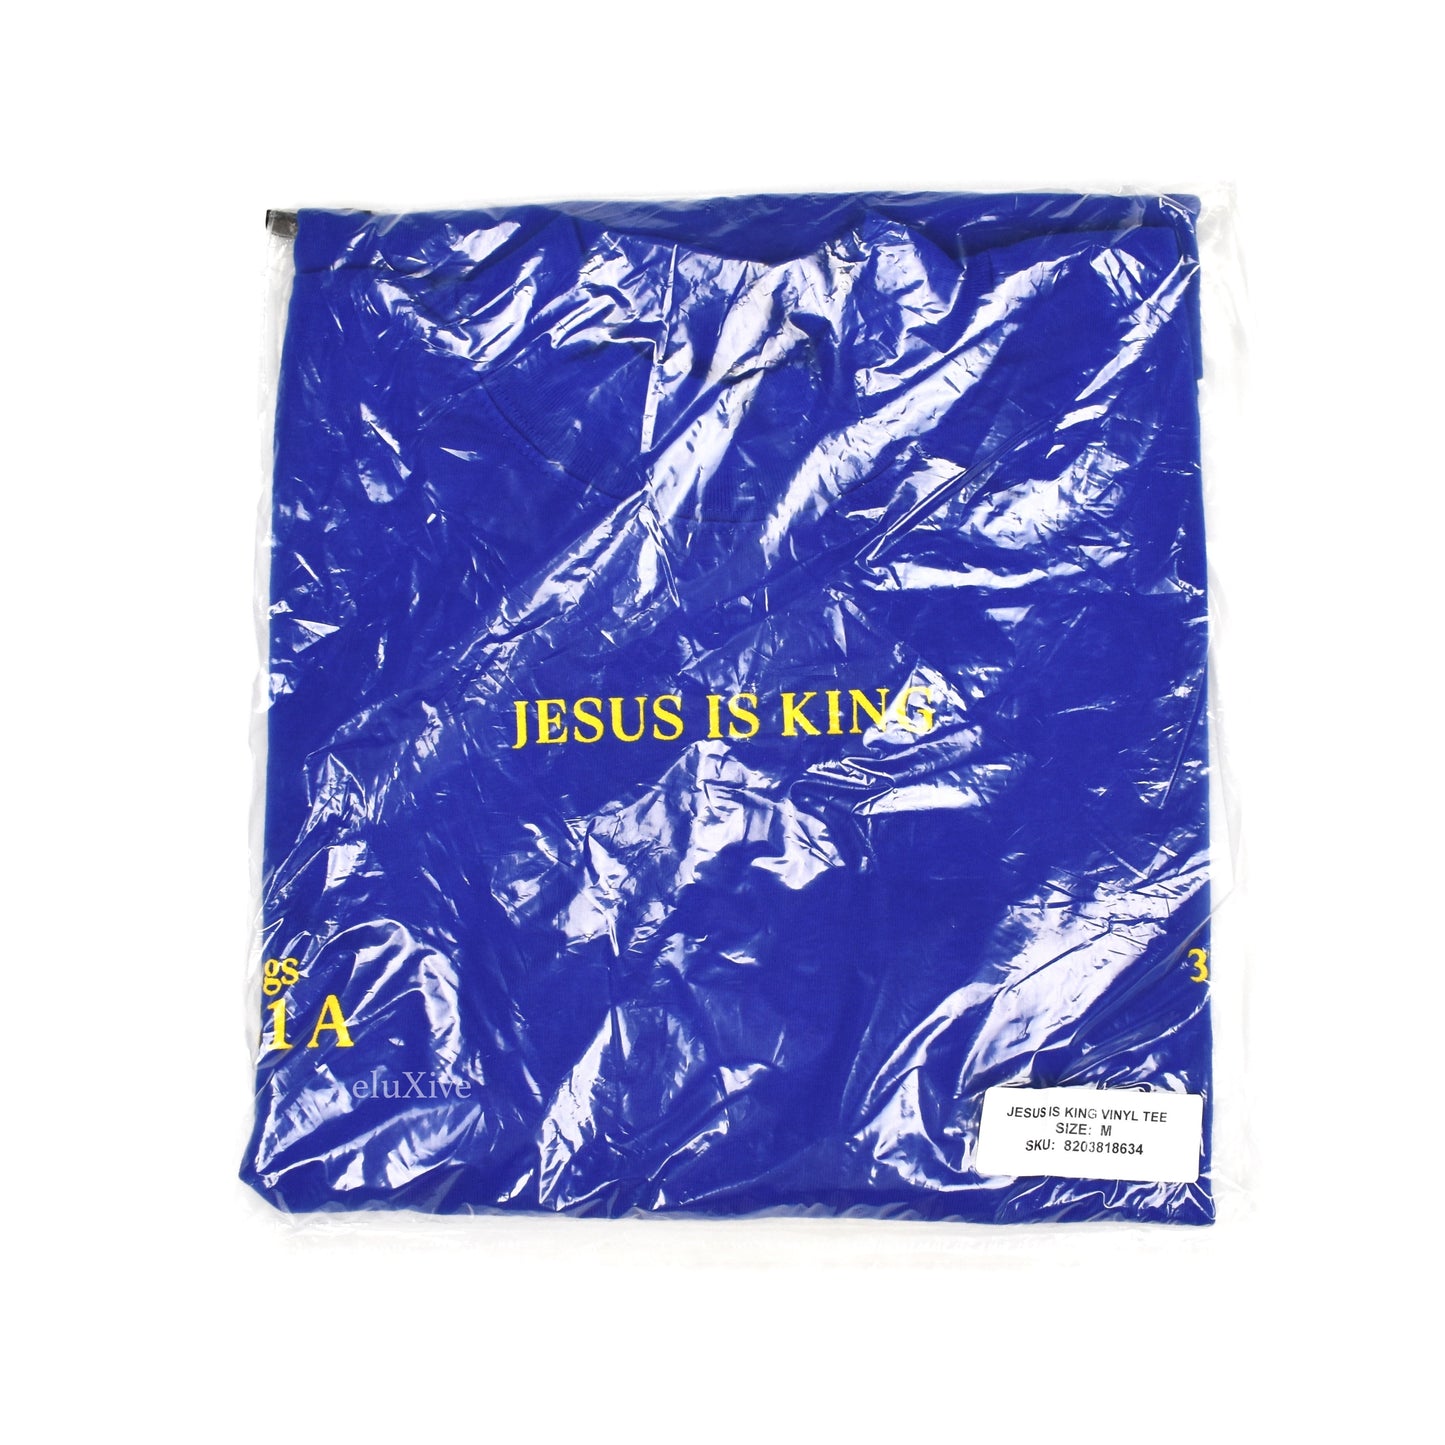 Kanye West - Jesus Is King Vinyl Cover T-Shirt (Blue)